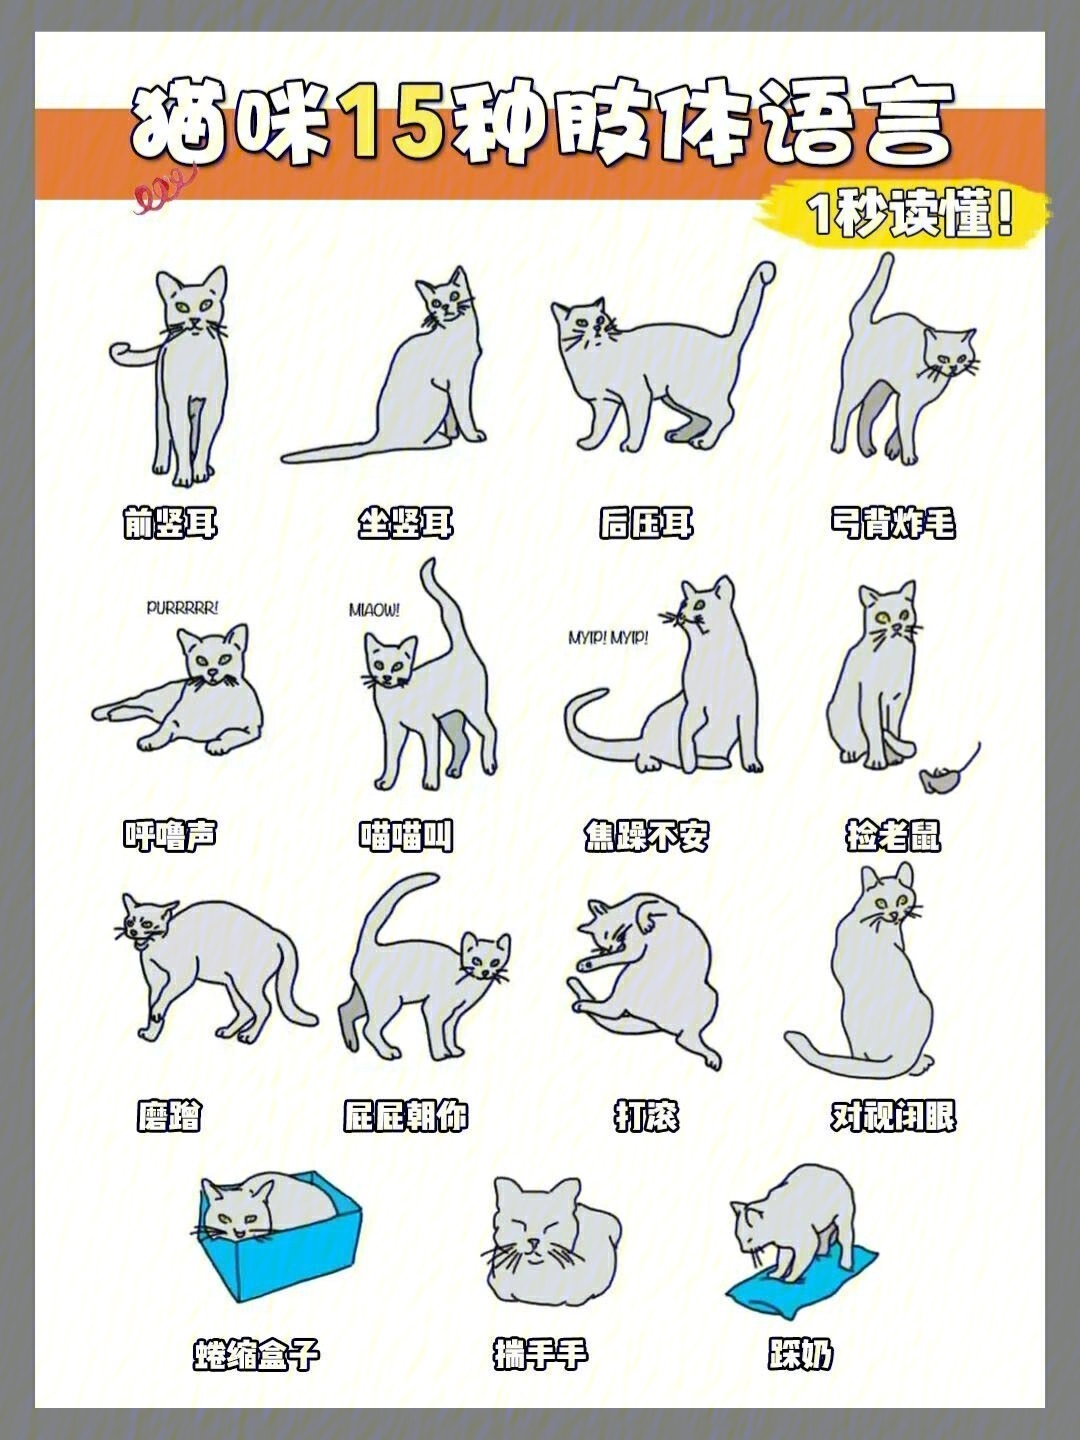 猫动作的含义图解图片